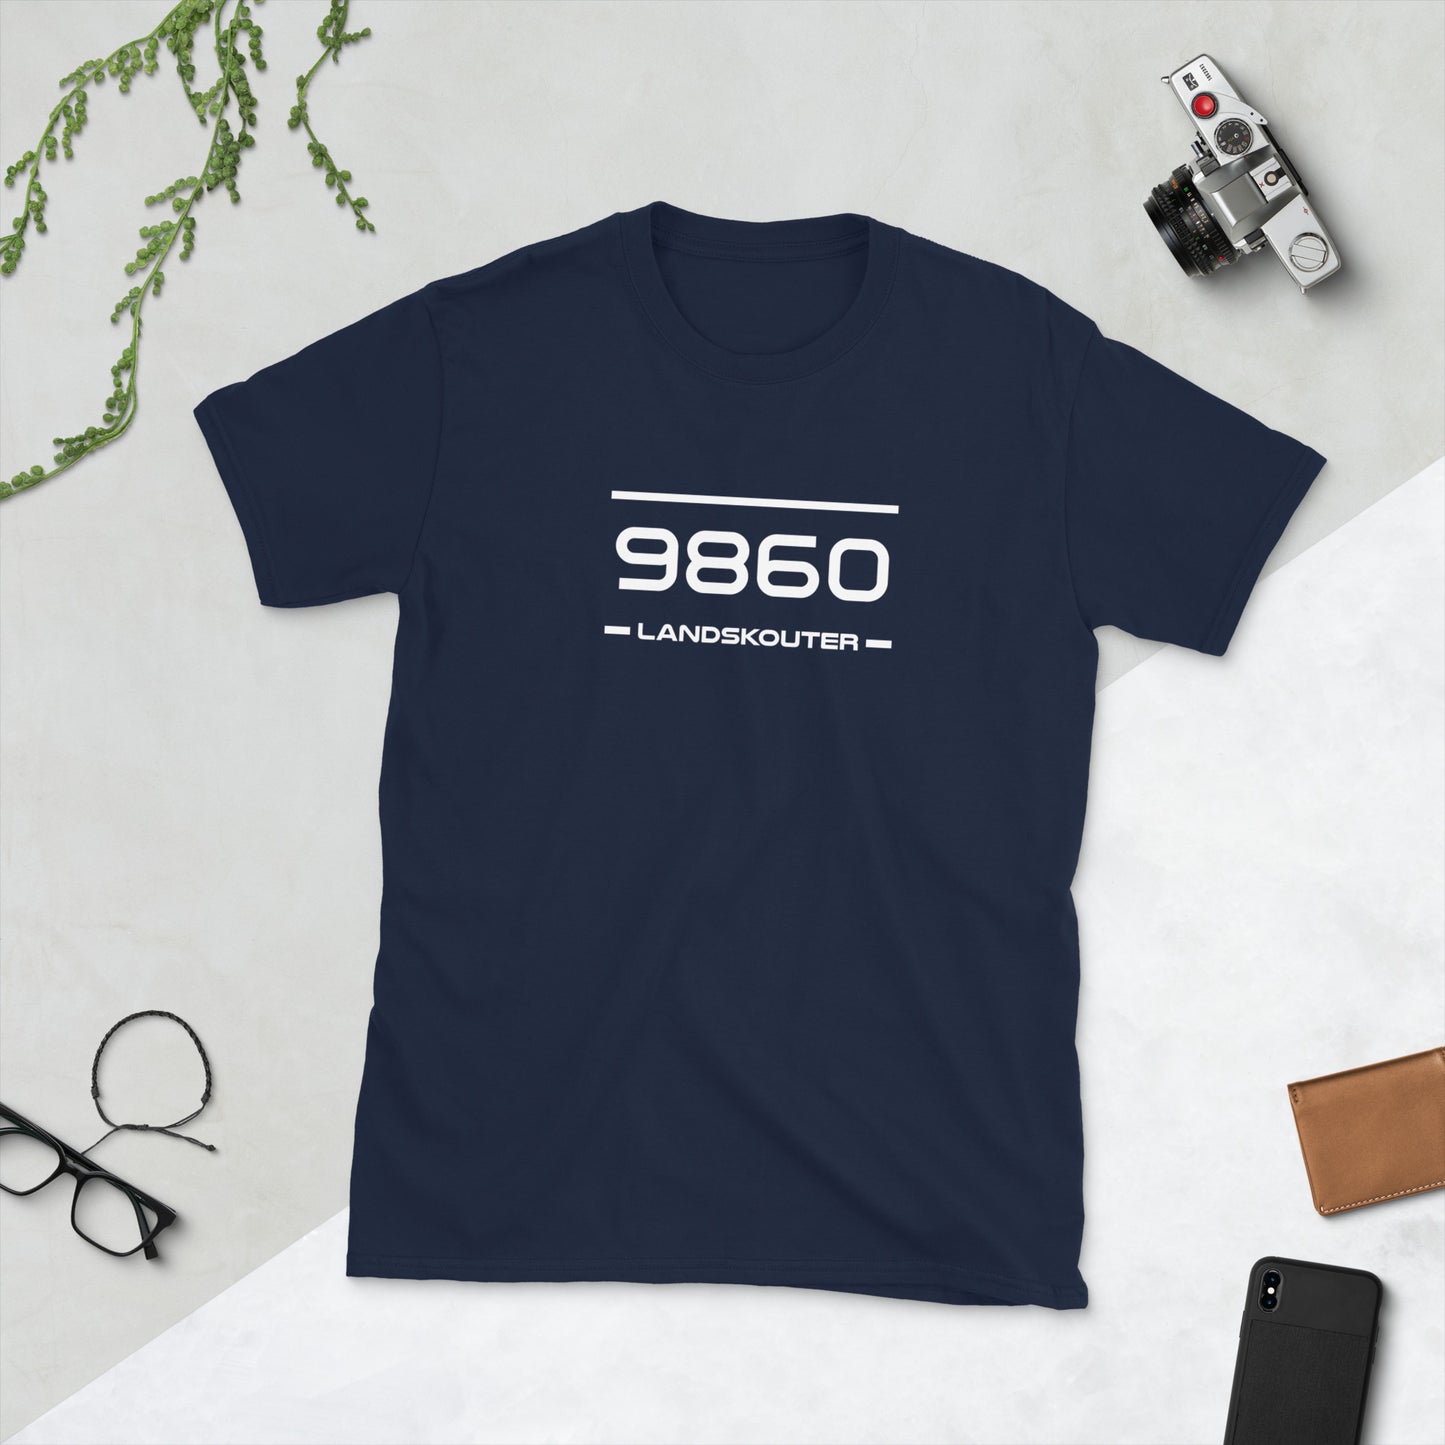 Tshirt - 9860 - Landskouter